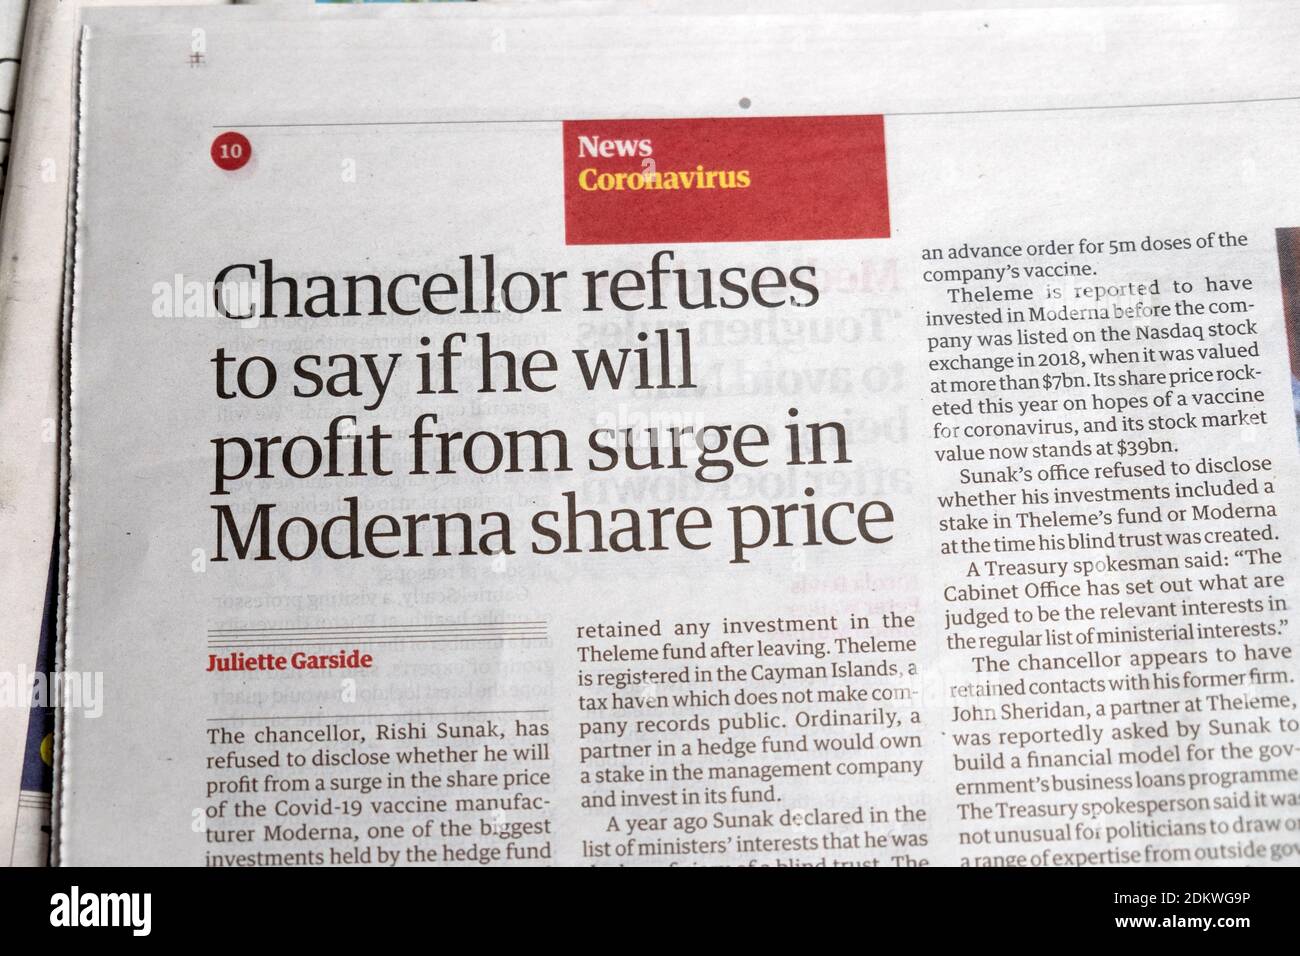 "Il Cancelliere si rifiuta di dire se trarne profitto dall'impennata In moderna share price' Coronavirus Covid giornale titolo in Guardian Londra UK 18 Nov 2020 Foto Stock